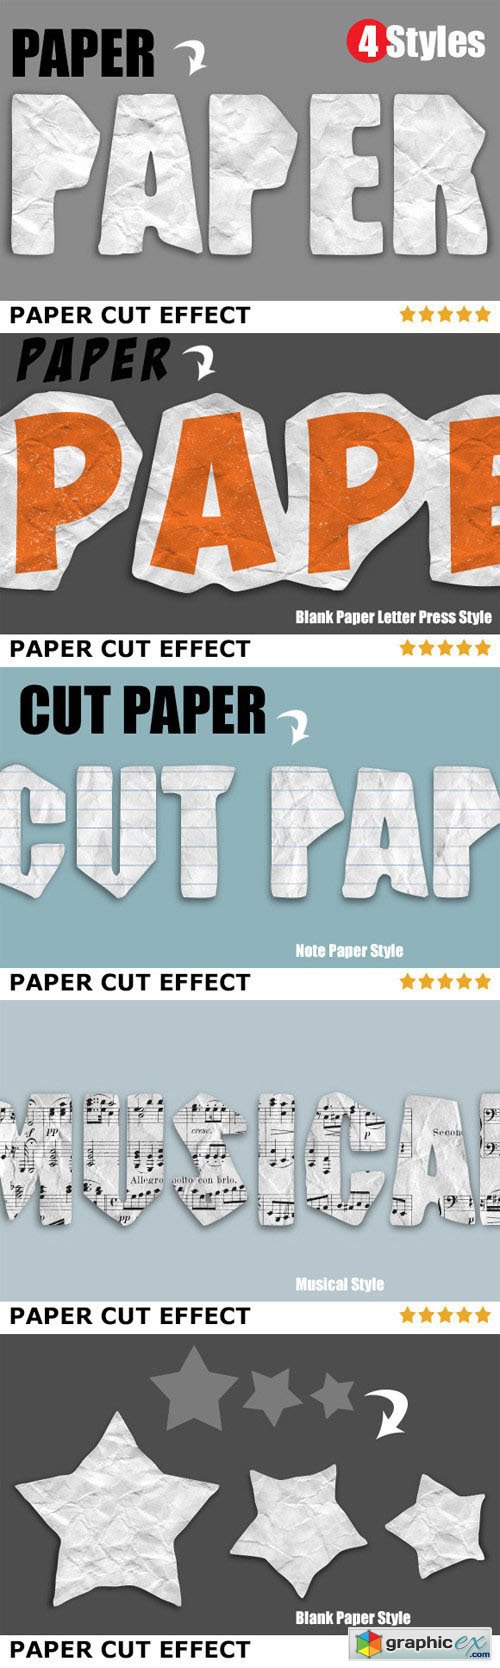 Paper Cut Effects